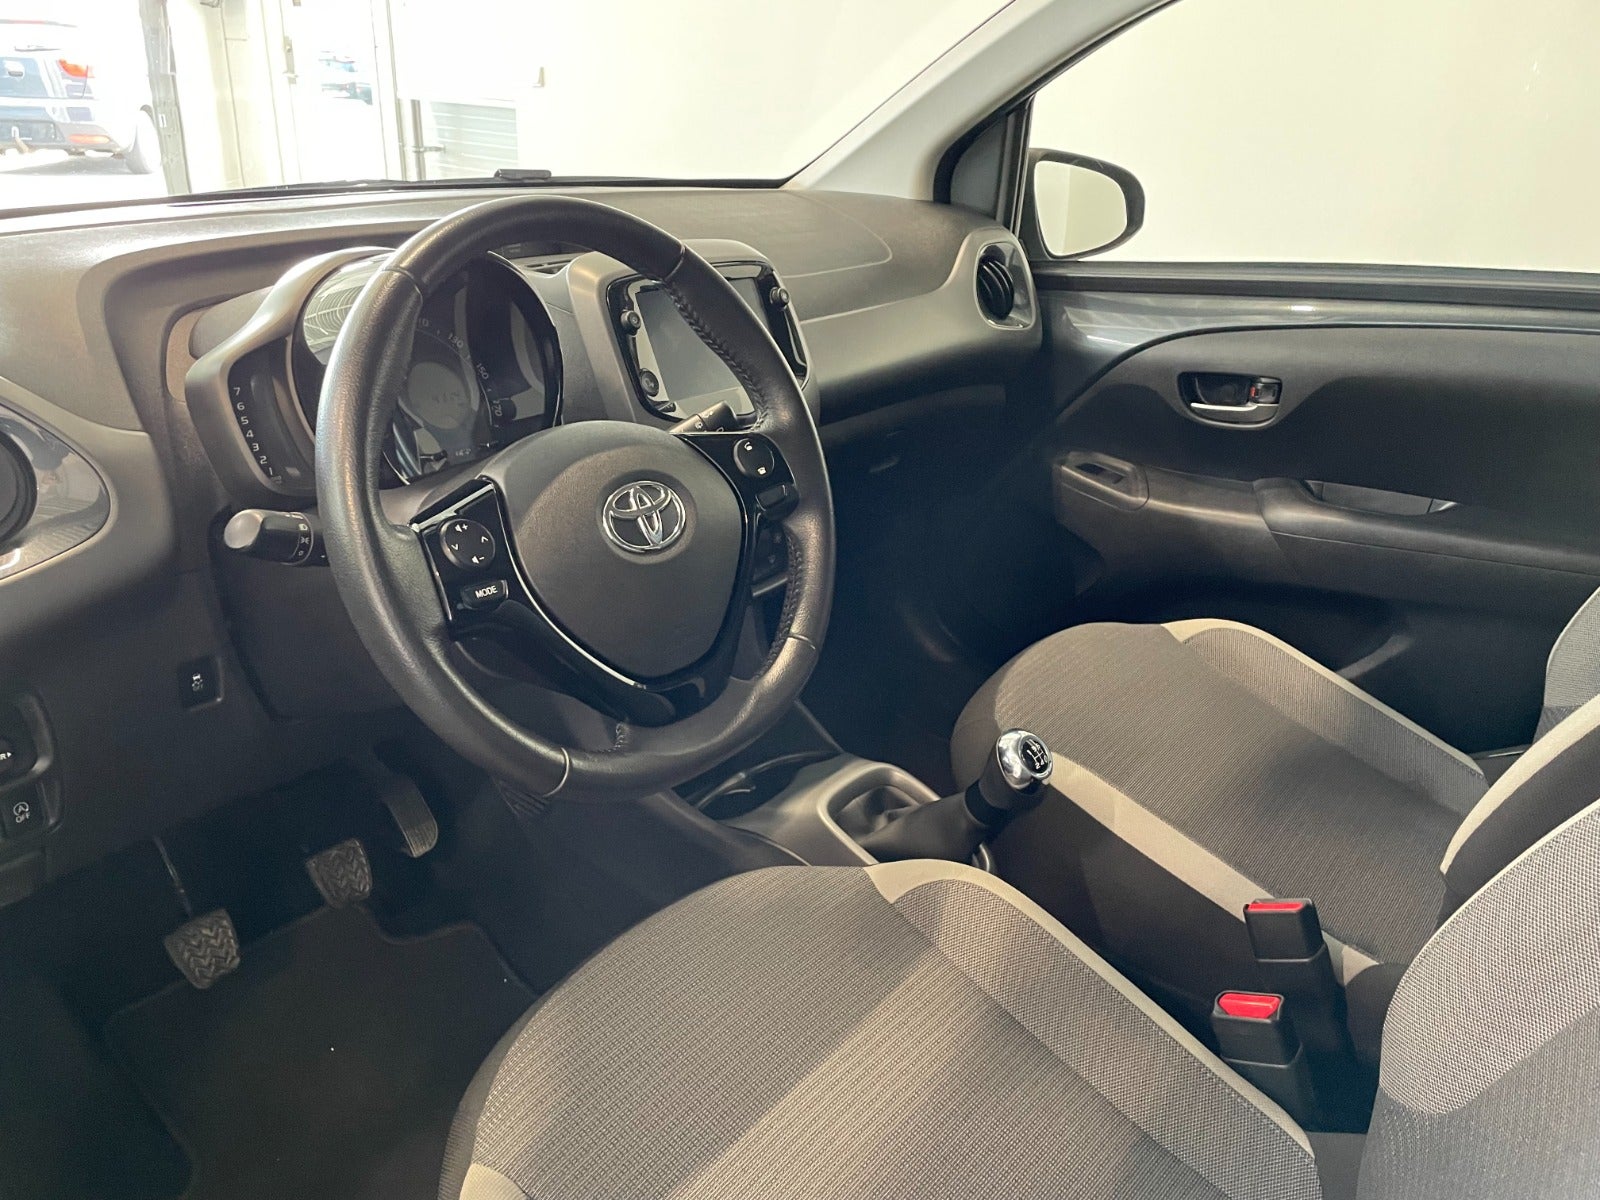 Toyota Aygo 2021